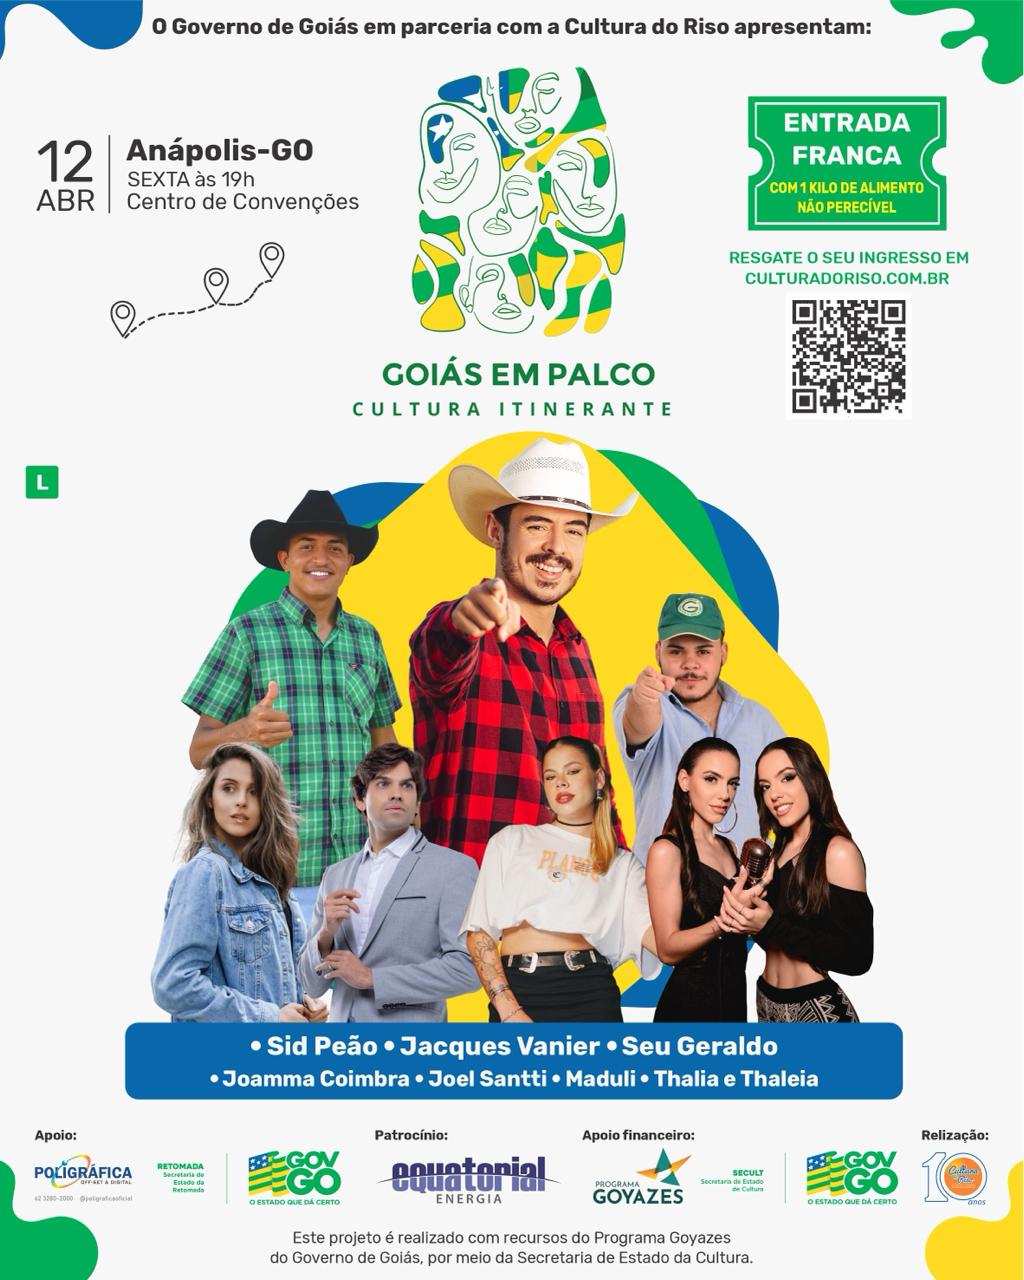 Goiás em Palco - Cultura Itinerante (Anápolis)